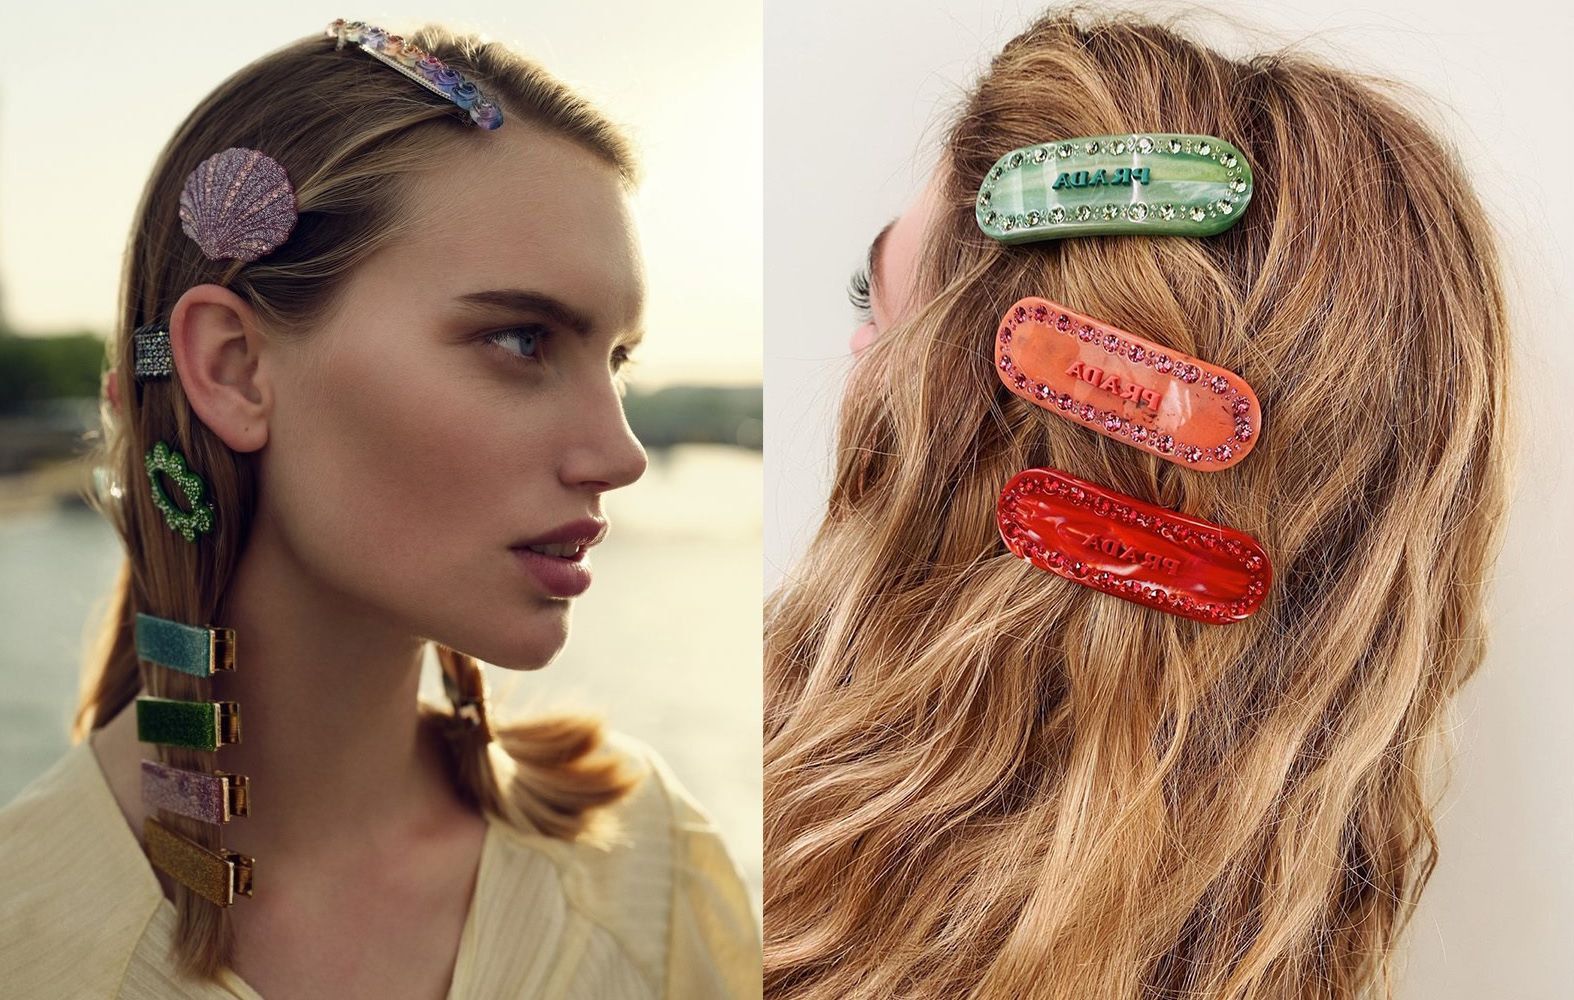 Gucci hair clip  Hair accessories headbands, Hair clips 90s, Hair